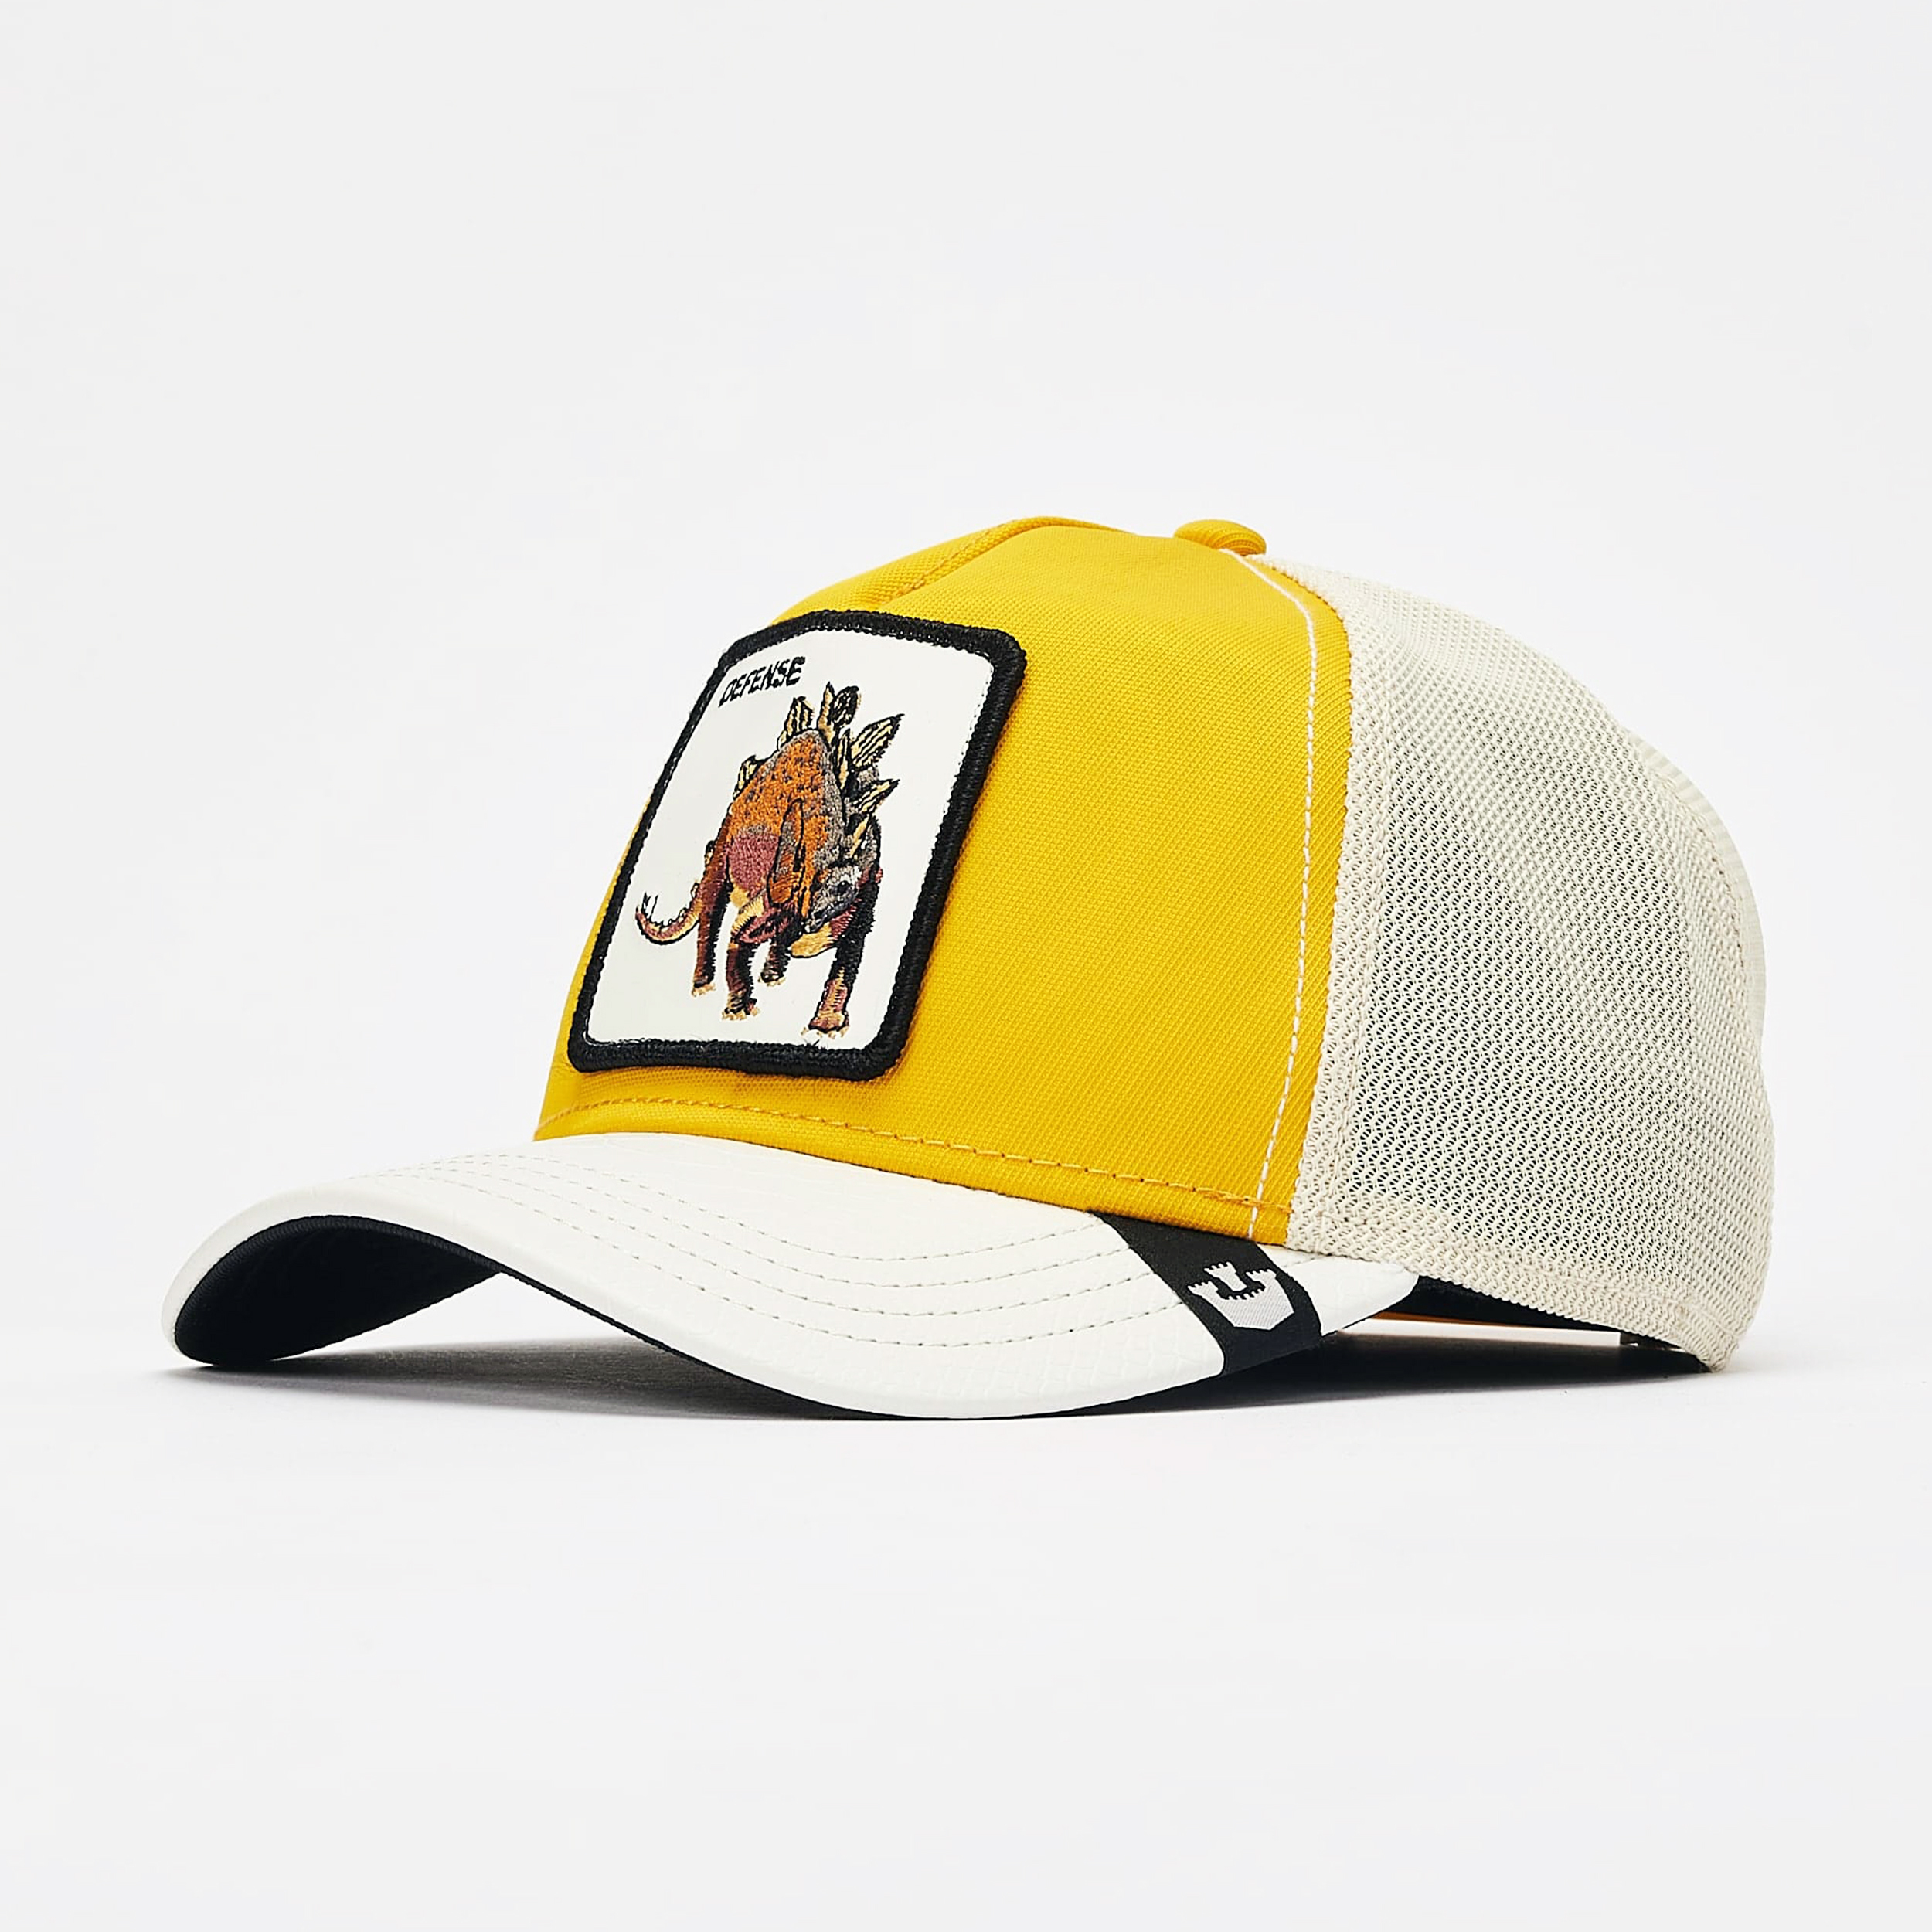 نکته خرید - قیمت روز کلاه کپ گورین براز مدل ROOFED LIZARD 101-0143 خرید